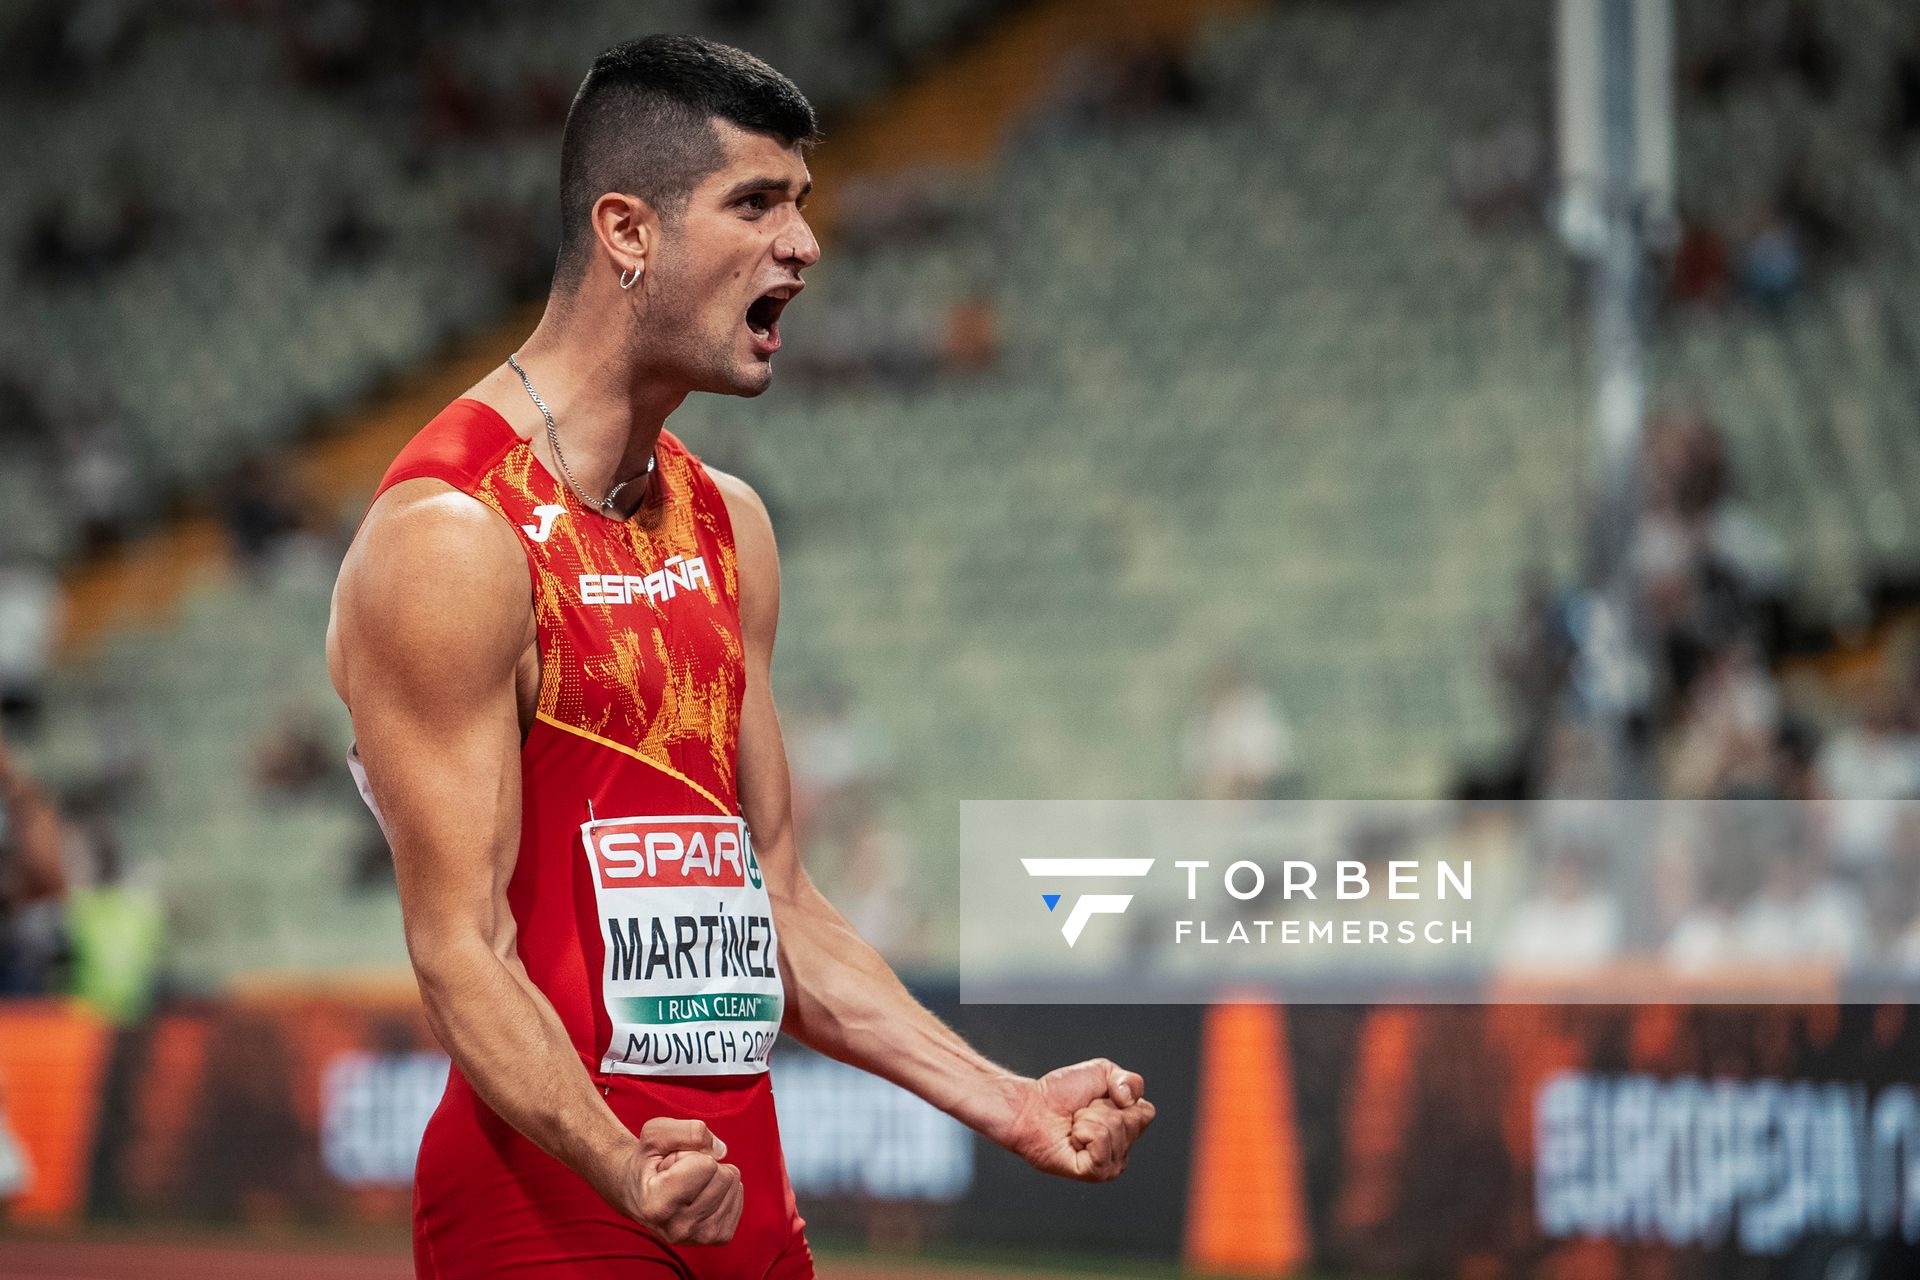 Asier Martinez (ESP) am 17.08.2022 bei den Leichtathletik-Europameisterschaften in Muenchen